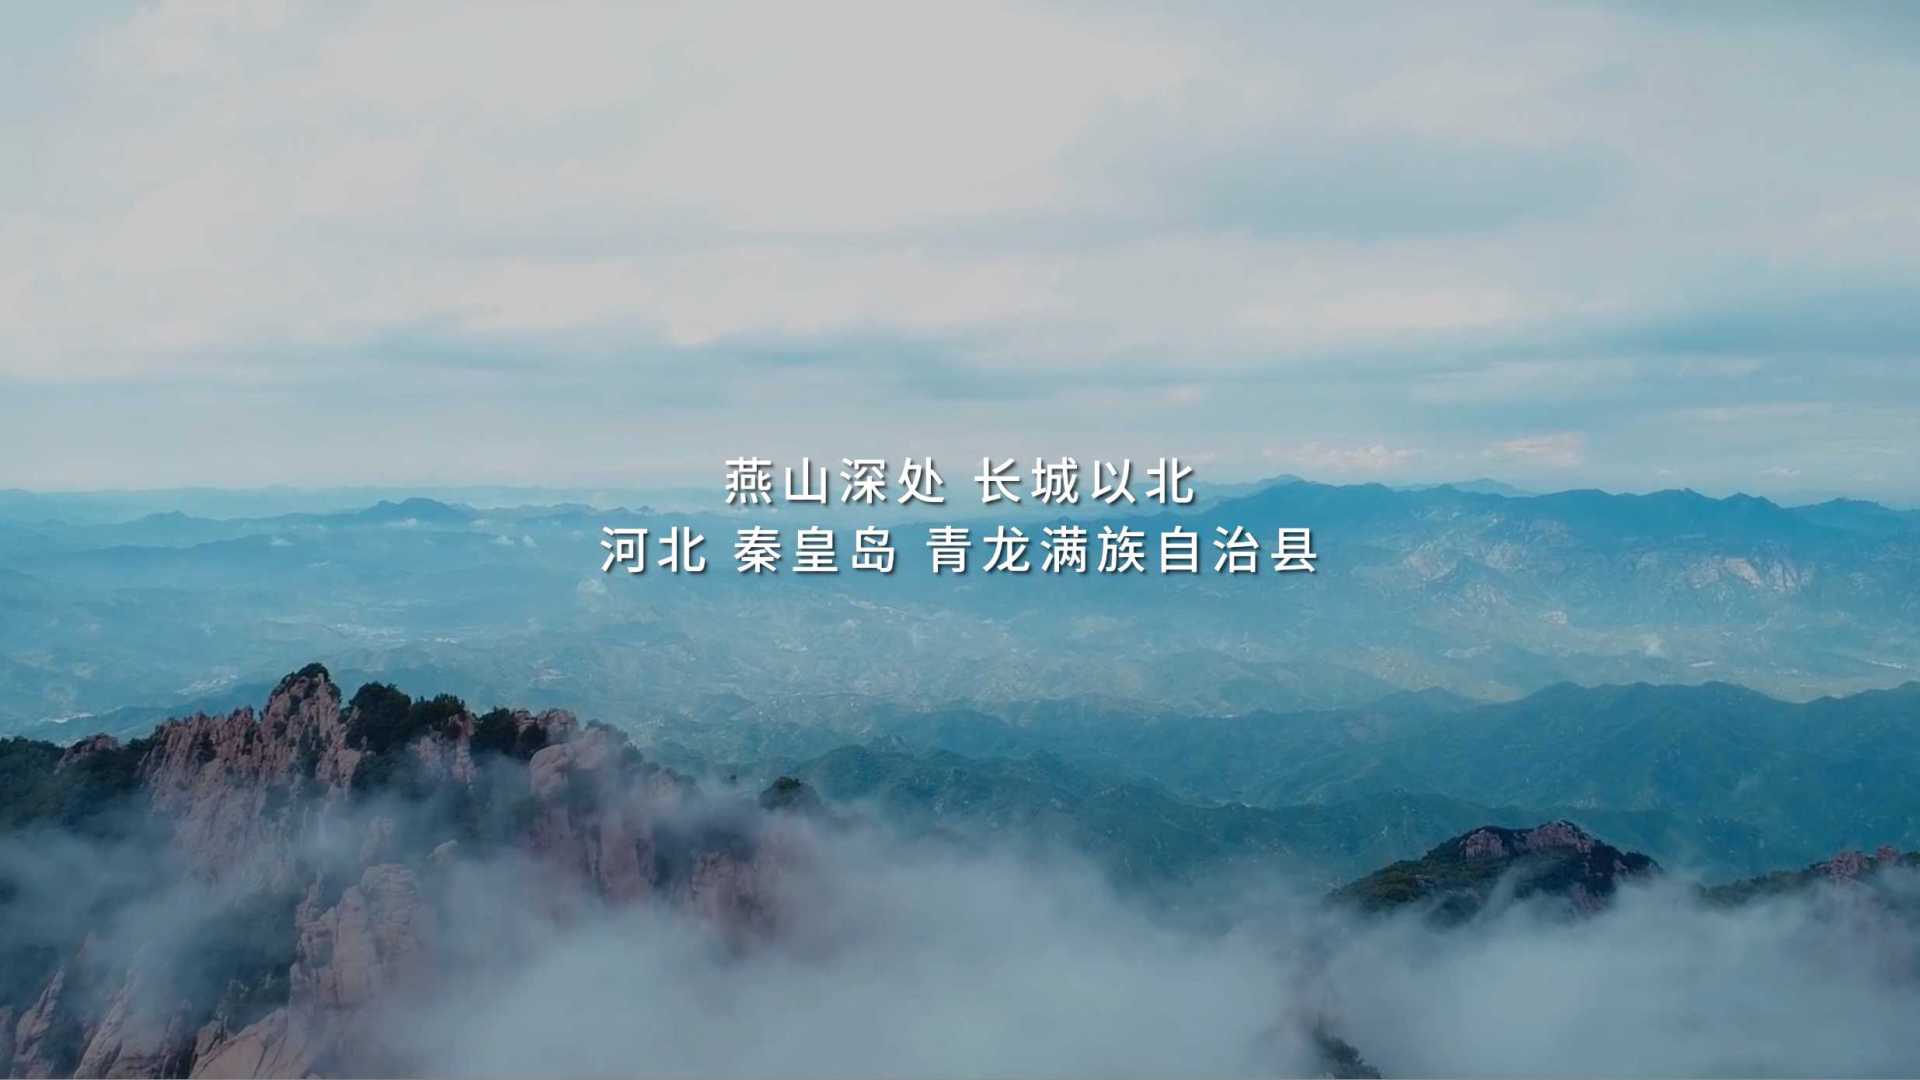 阿里基金&新片场 青龙教育纪录片